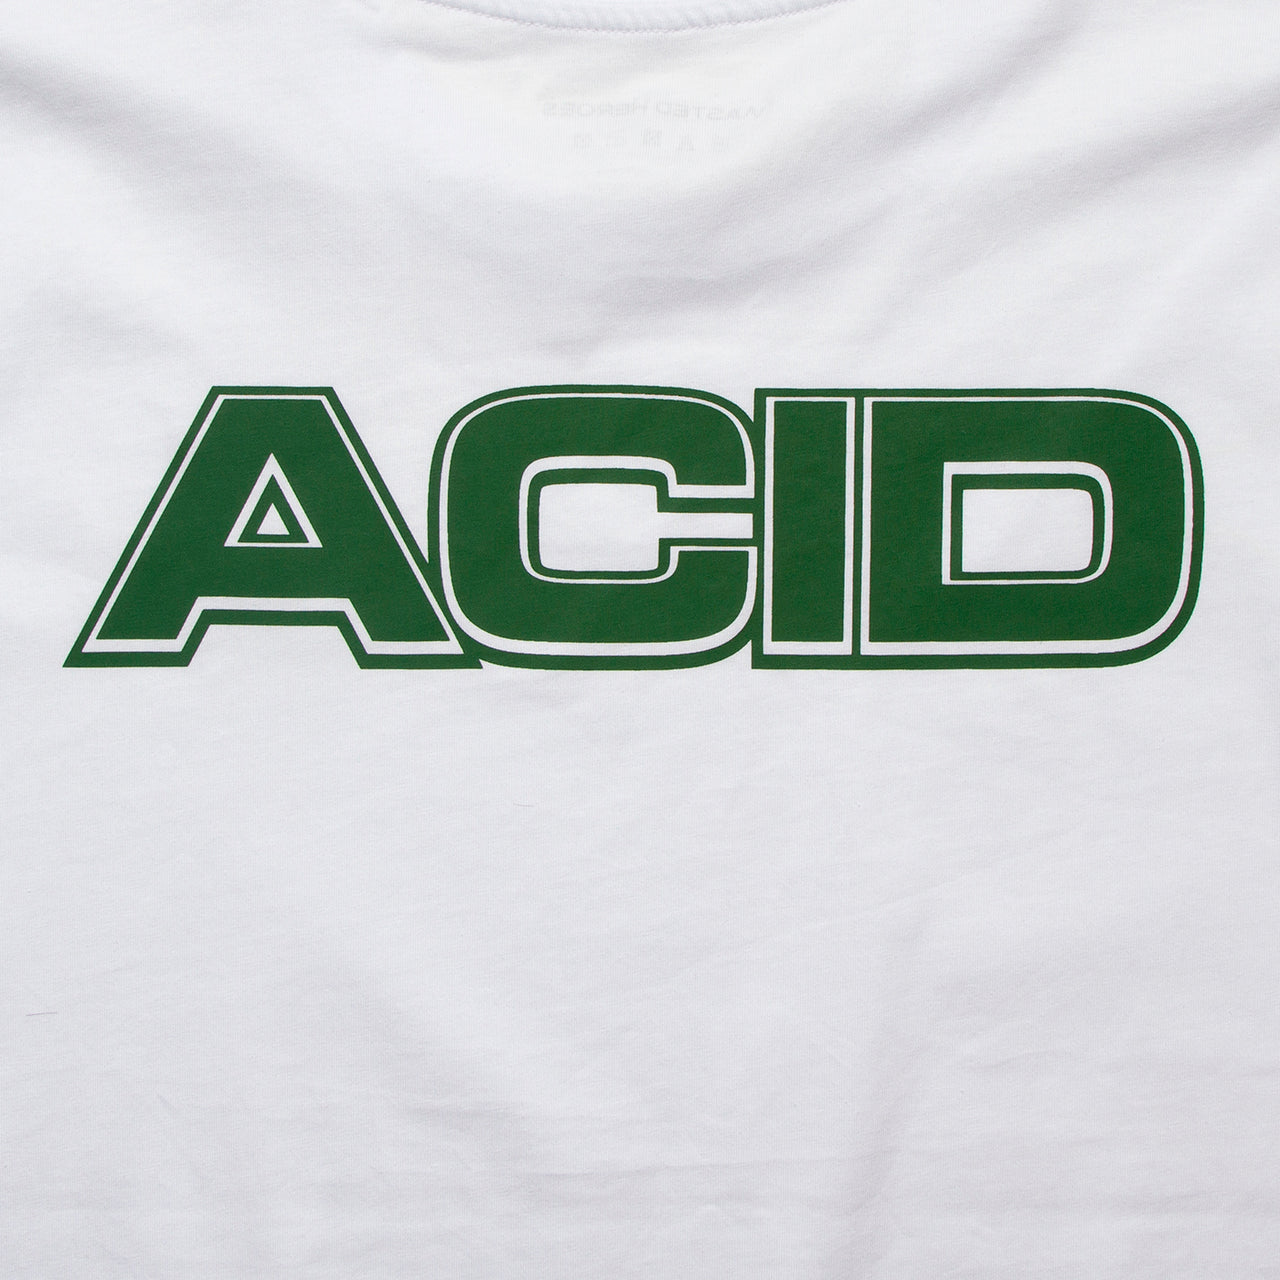 Acid Moto Back Print - Tshirt - White